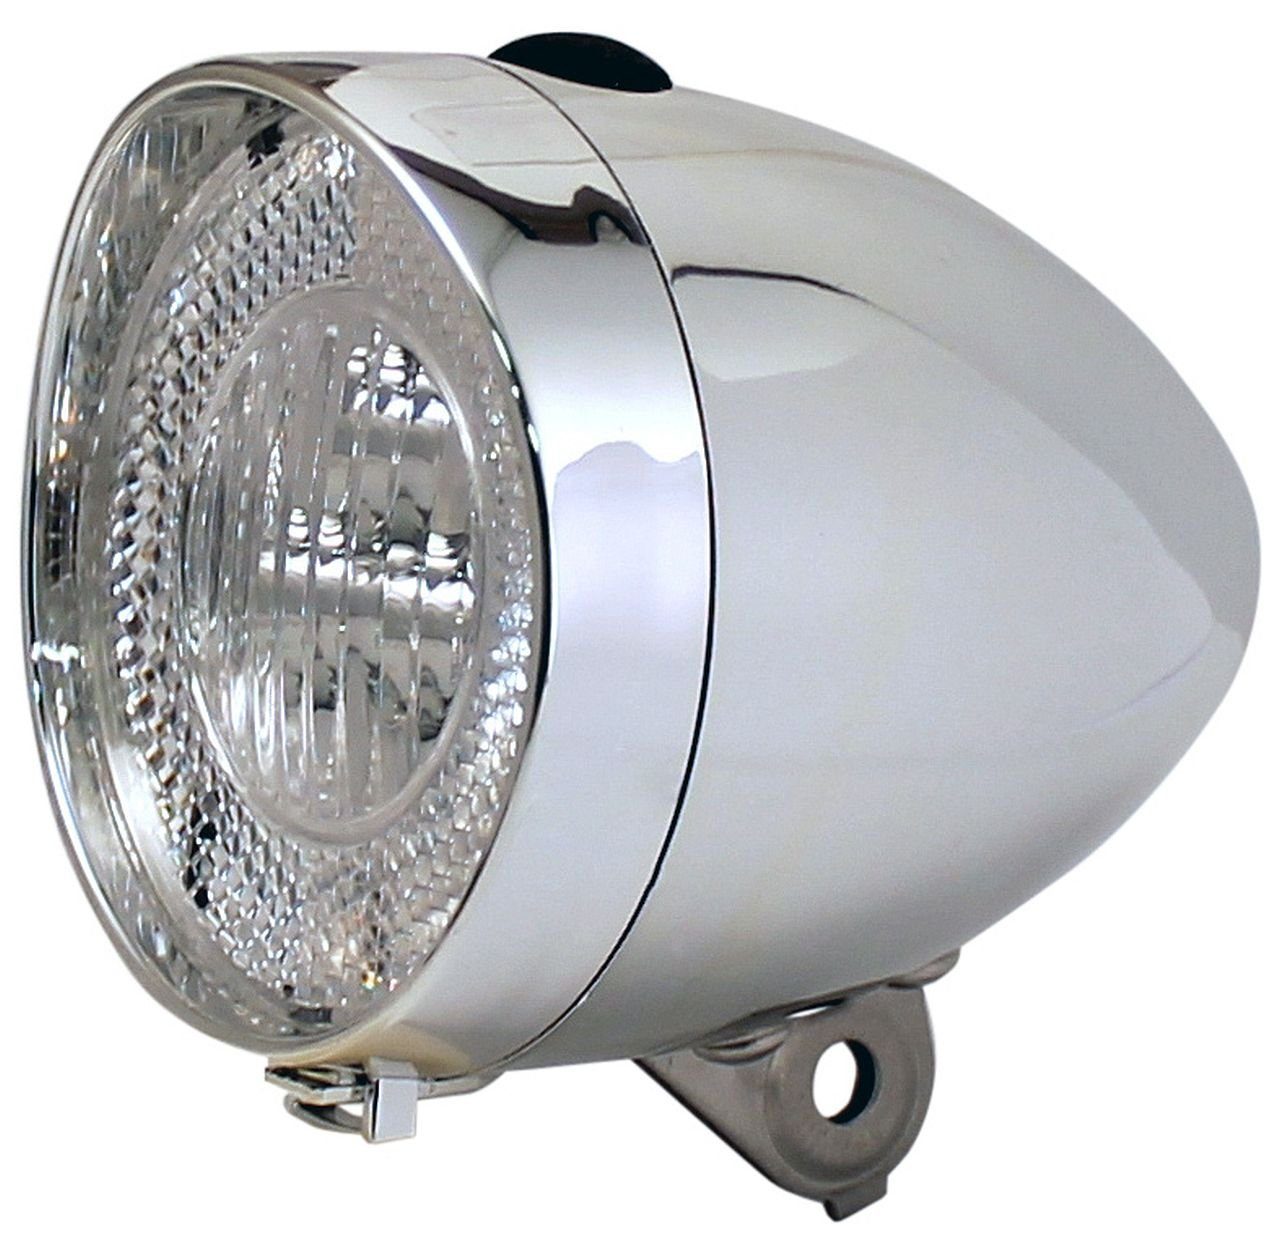 Fahrrad Lampe Scheinwerfer Licht Retro Halogen 10 Lux Schalter